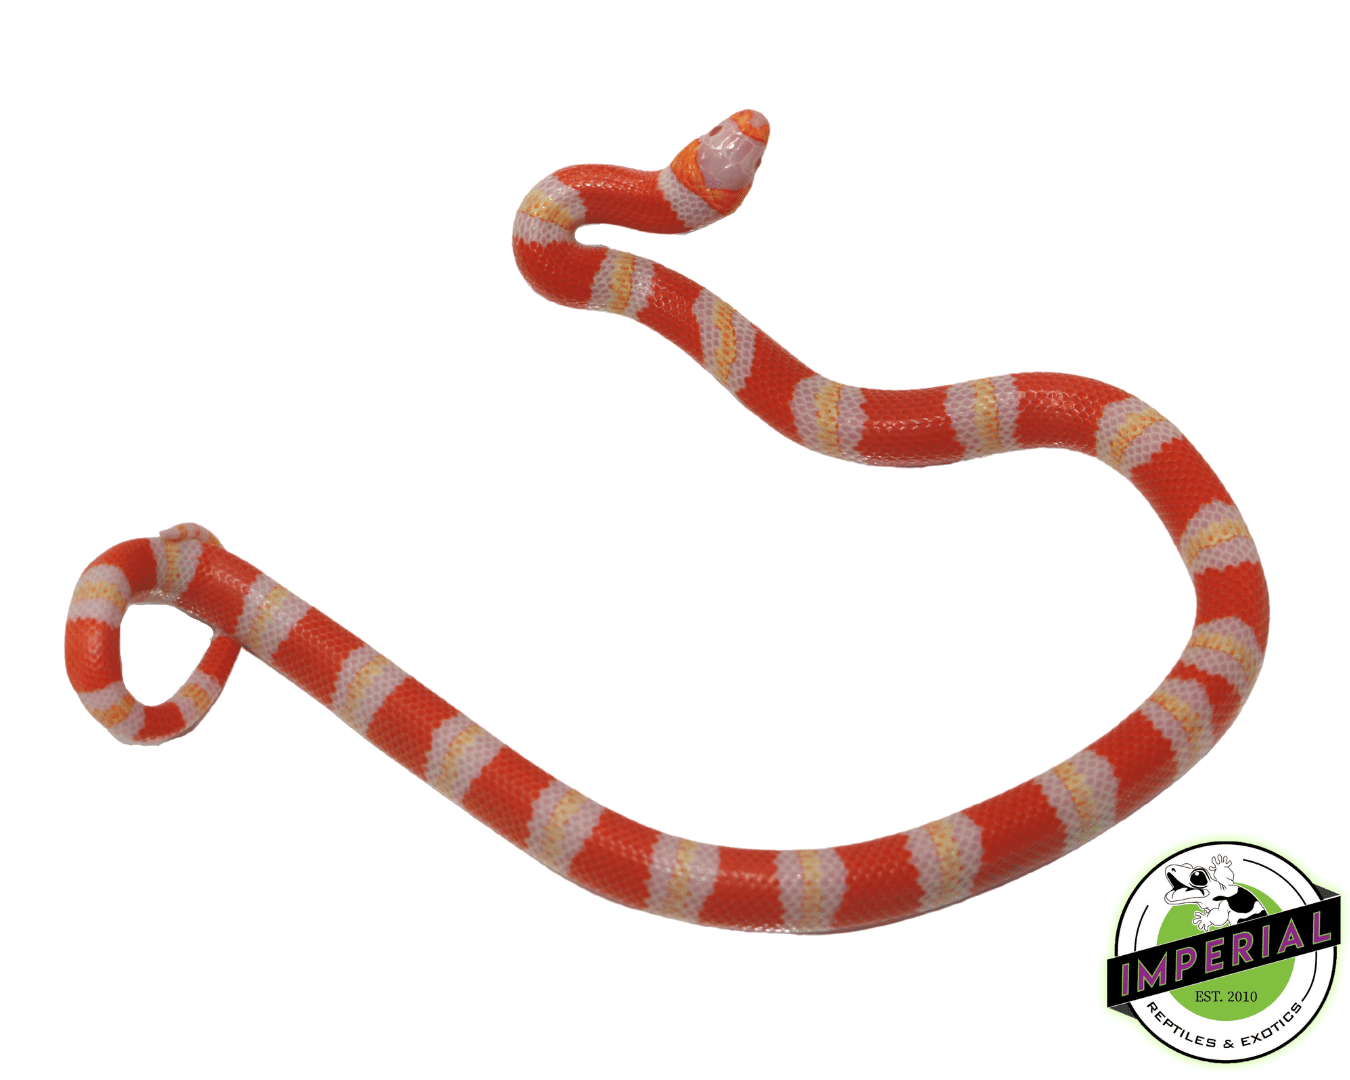 albino tri-color honduran milk snake for sale, buy reptiles online